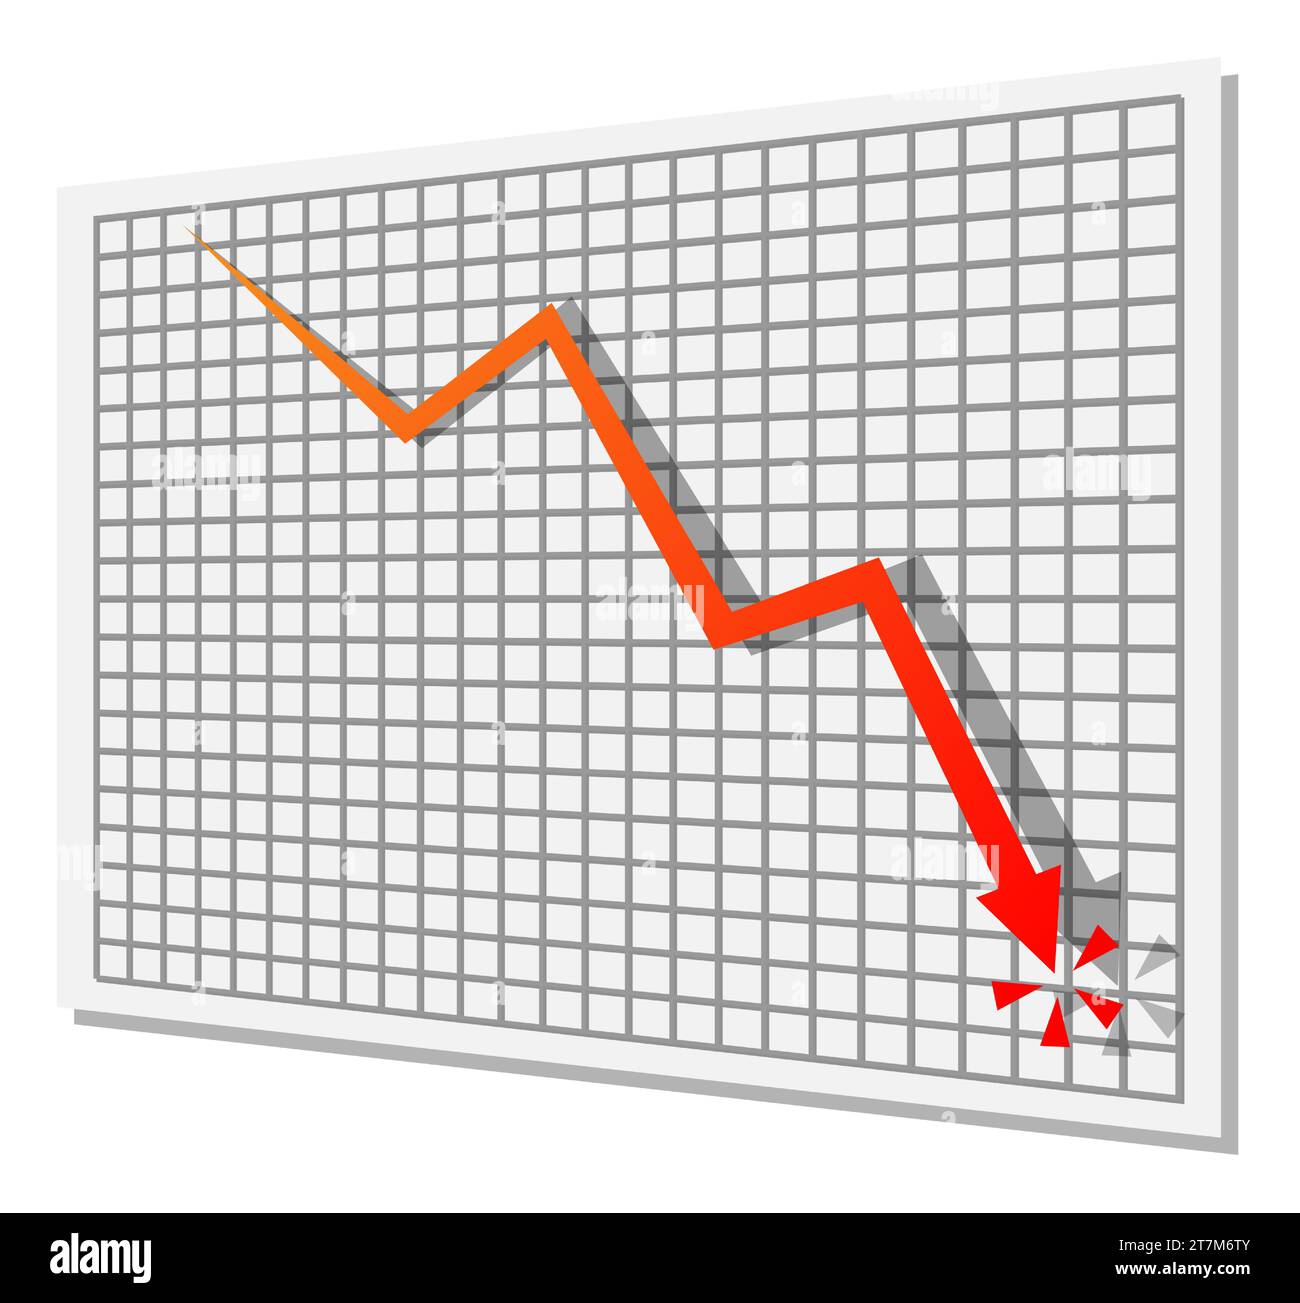 Illustrazione vettoriale di una freccia verso il basso che simboleggia il declino economico, la recessione e la recessione finanziaria Illustrazione Vettoriale